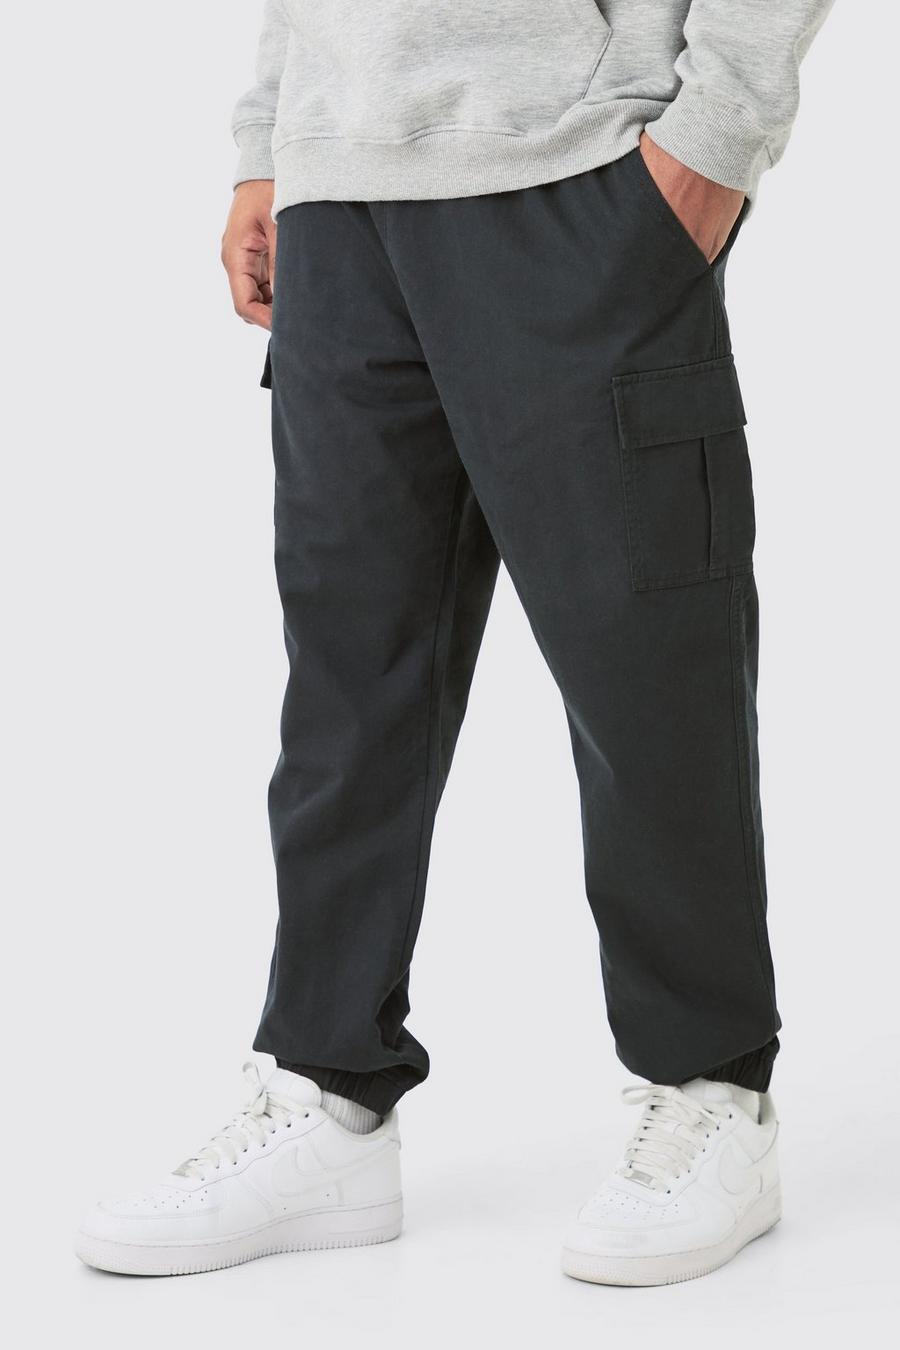 Pantaloni Cargo Plus Size Slim Fit in twill con vita elasticizzata, Black